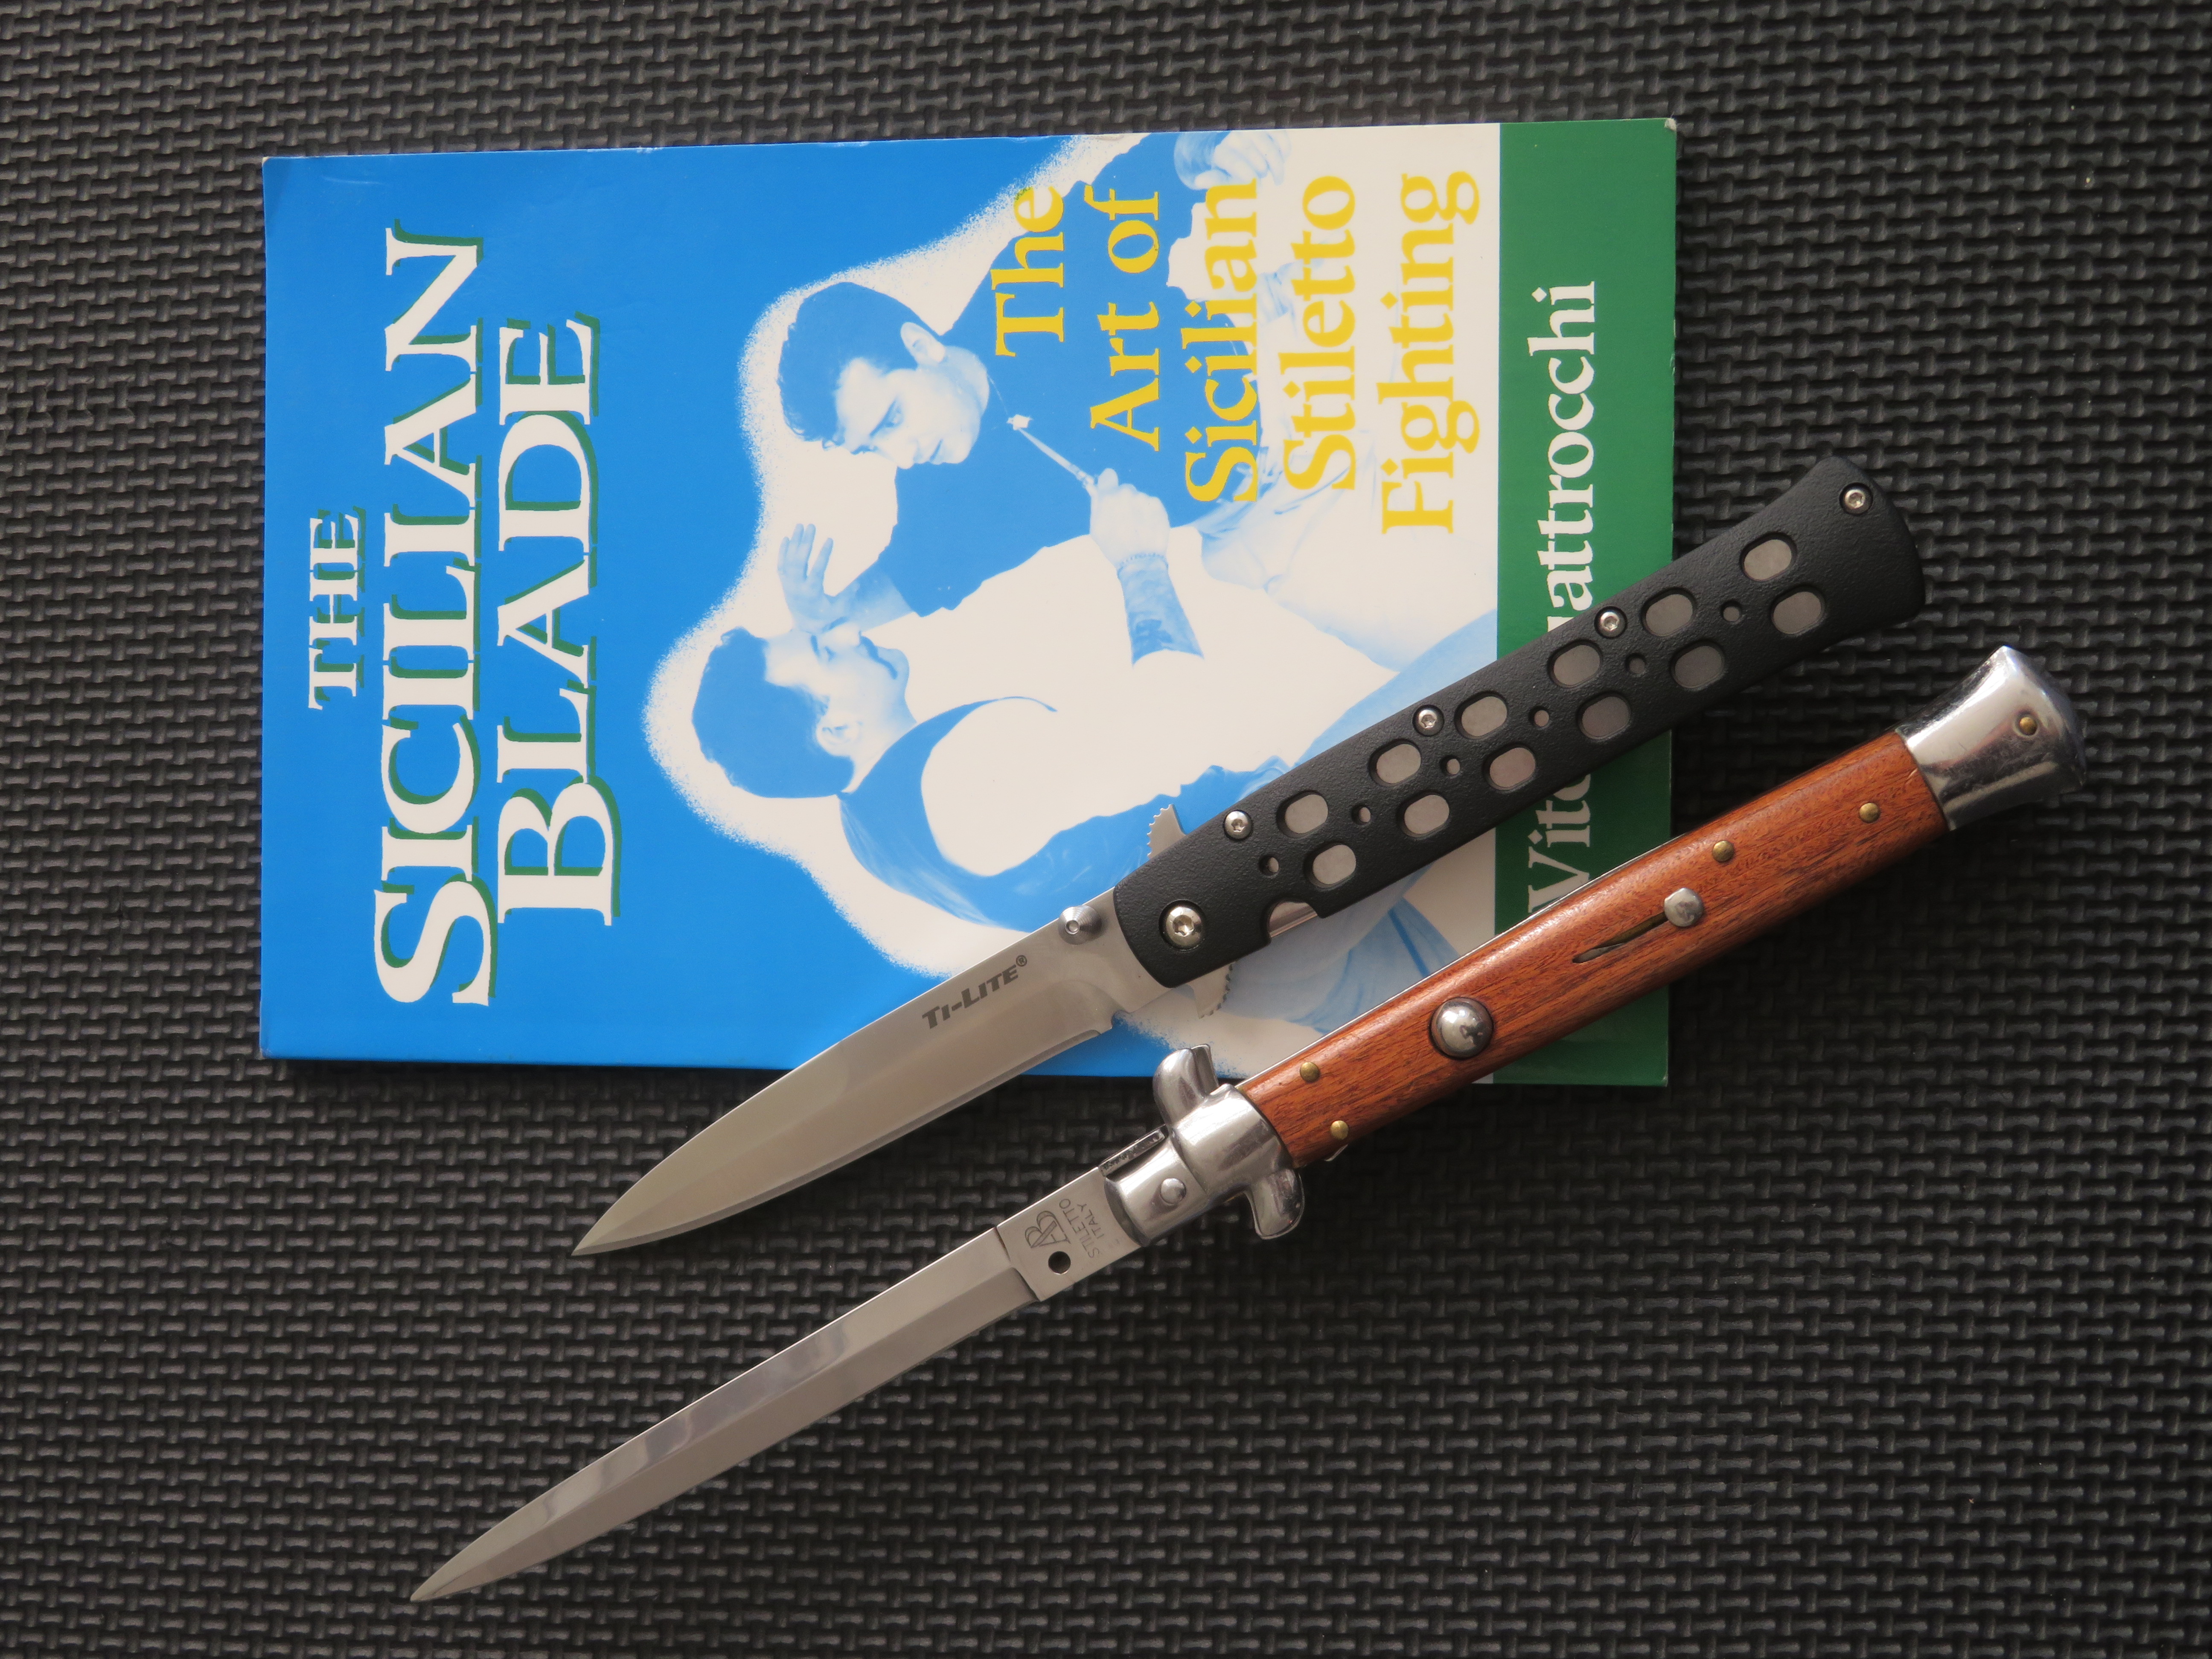 Kniha The Sicilian Blade, autentická verze italského vyskakovacího nože a model Ti-Lite vyroben firmou Cold Steel.